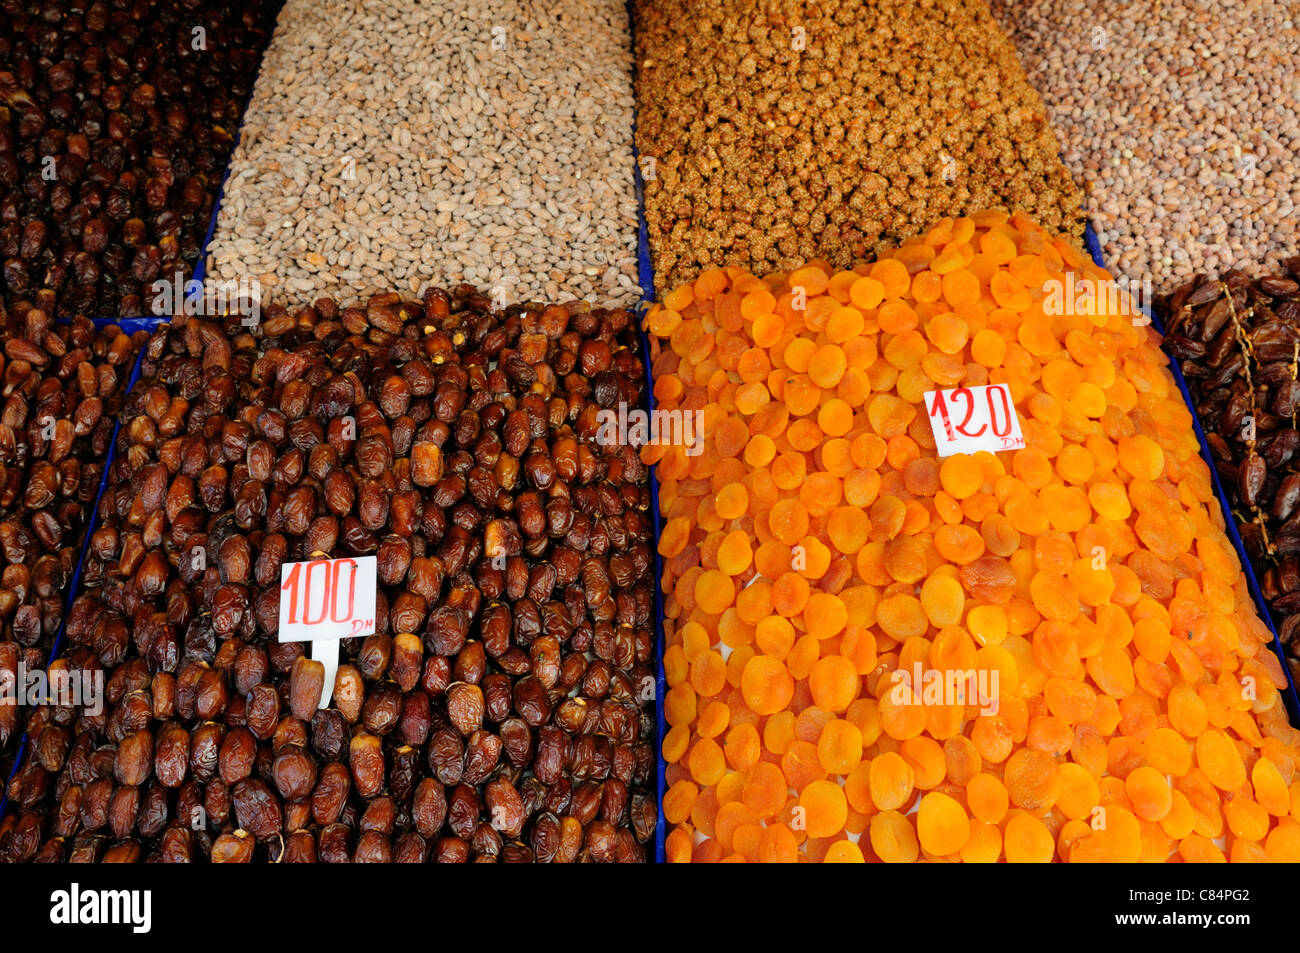 Los frutos secos para la venta, la Place Djemaa el Fna en Marrakech, Marruecos Foto de stock